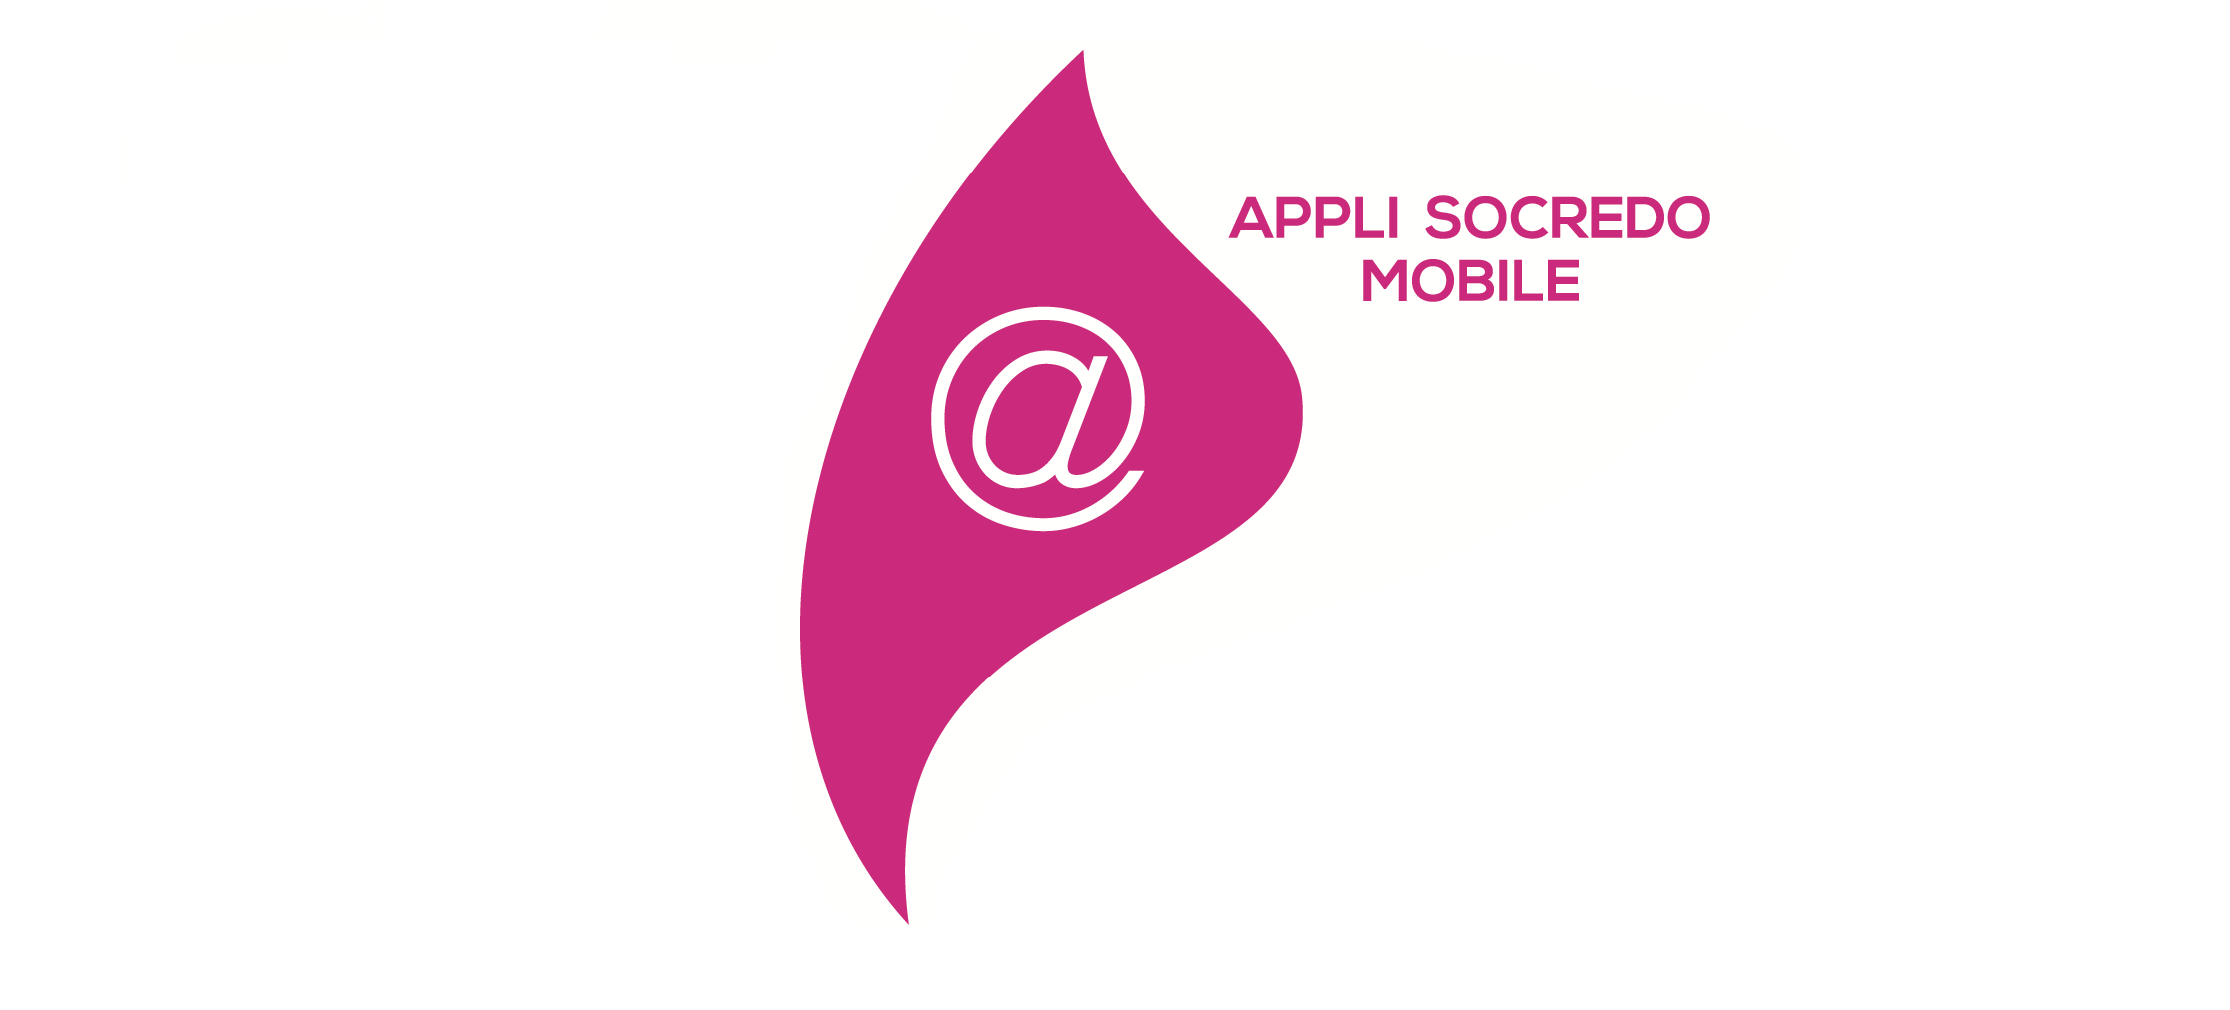 L’application mobile pour vous connecter à vos comptes depuis votre smartphone